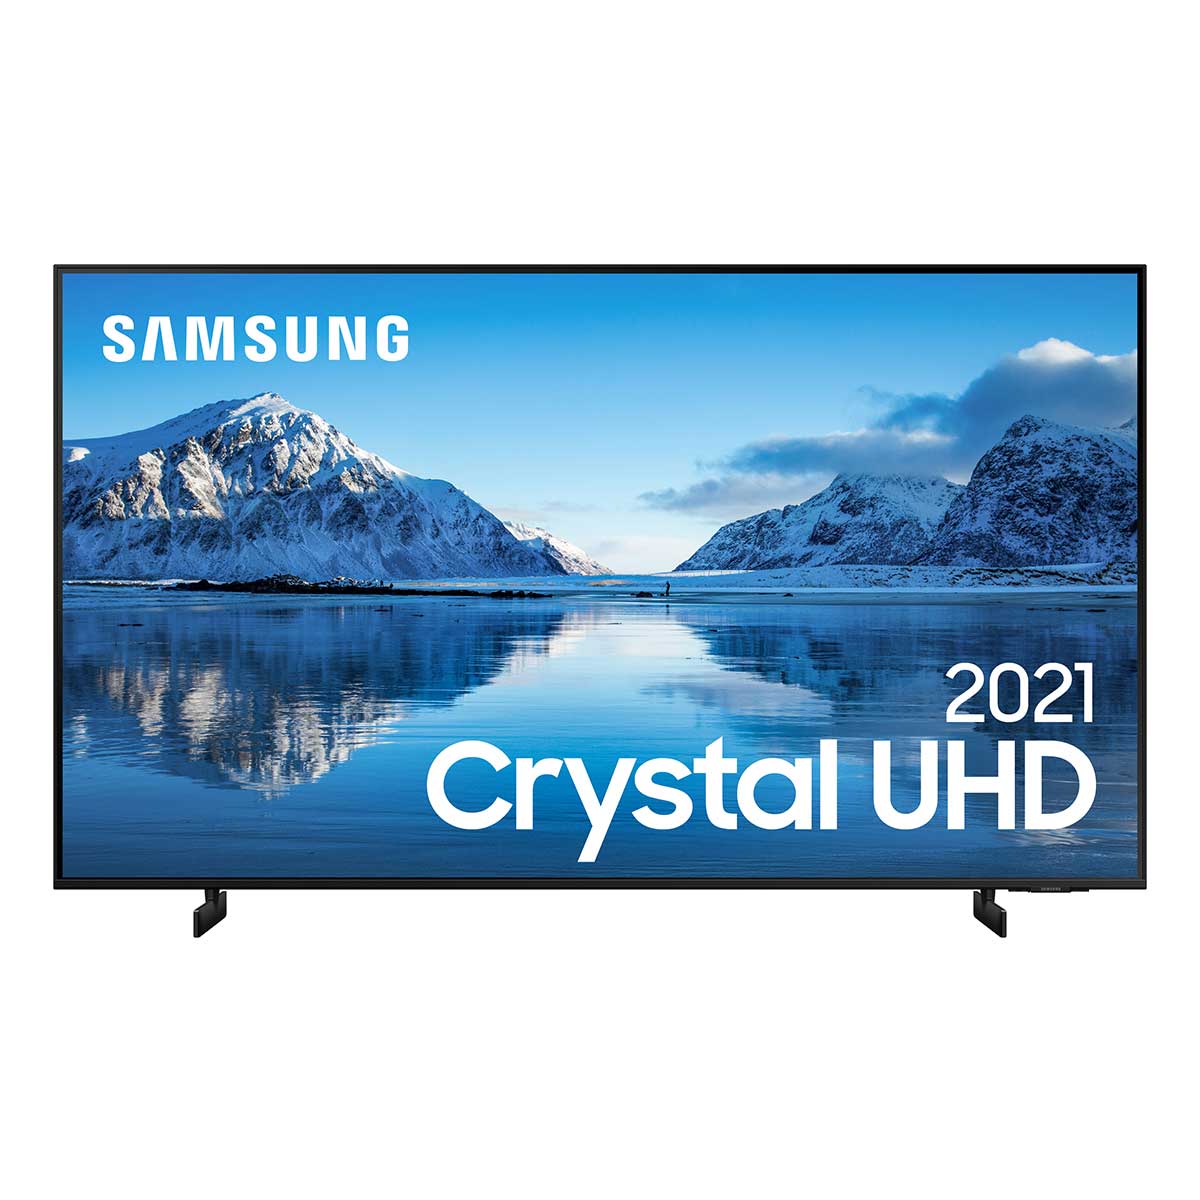 Samsung Smart Tv 55' Crystal Uhd 4K 55Au8000, Painel Dynamic Crystal Color, Design Slim